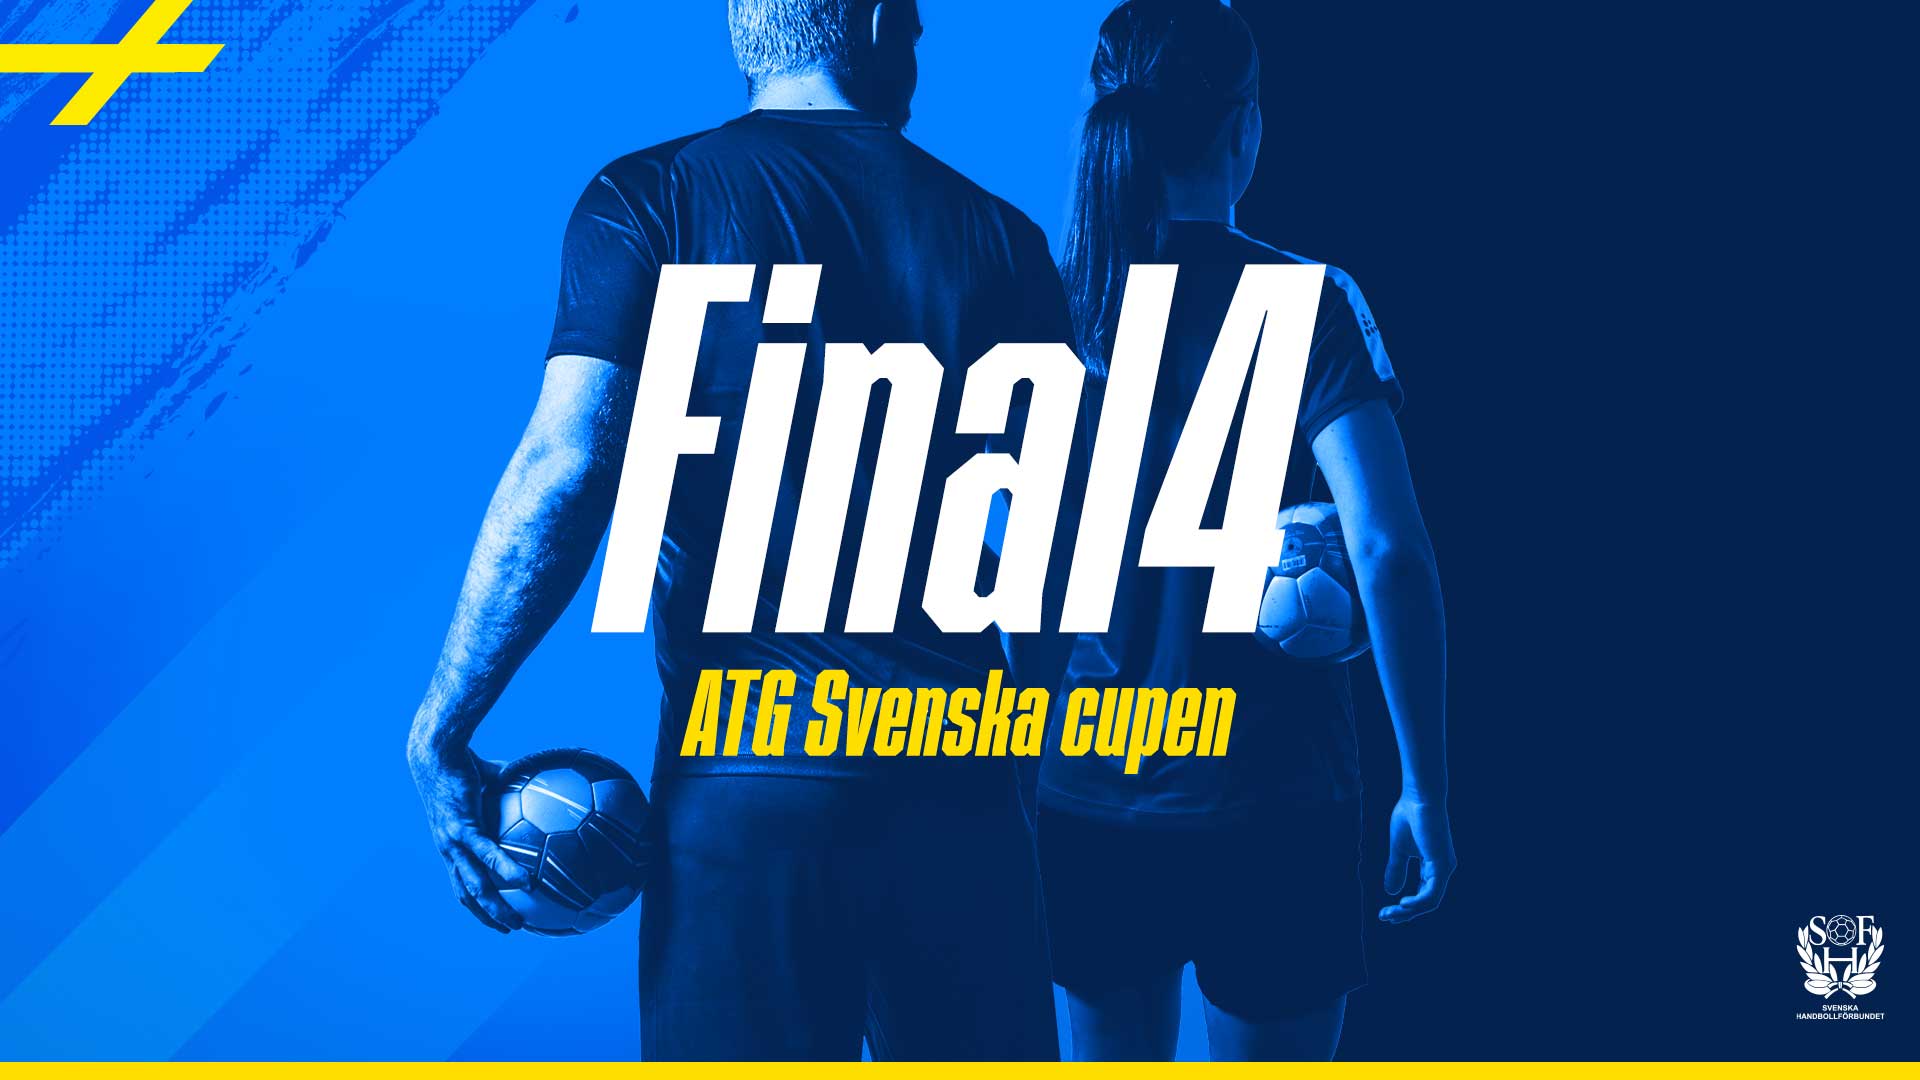 blå bakgrund med ryggarna från en dam och en herr handbollsspelare och texten final4 atg svenska cupen